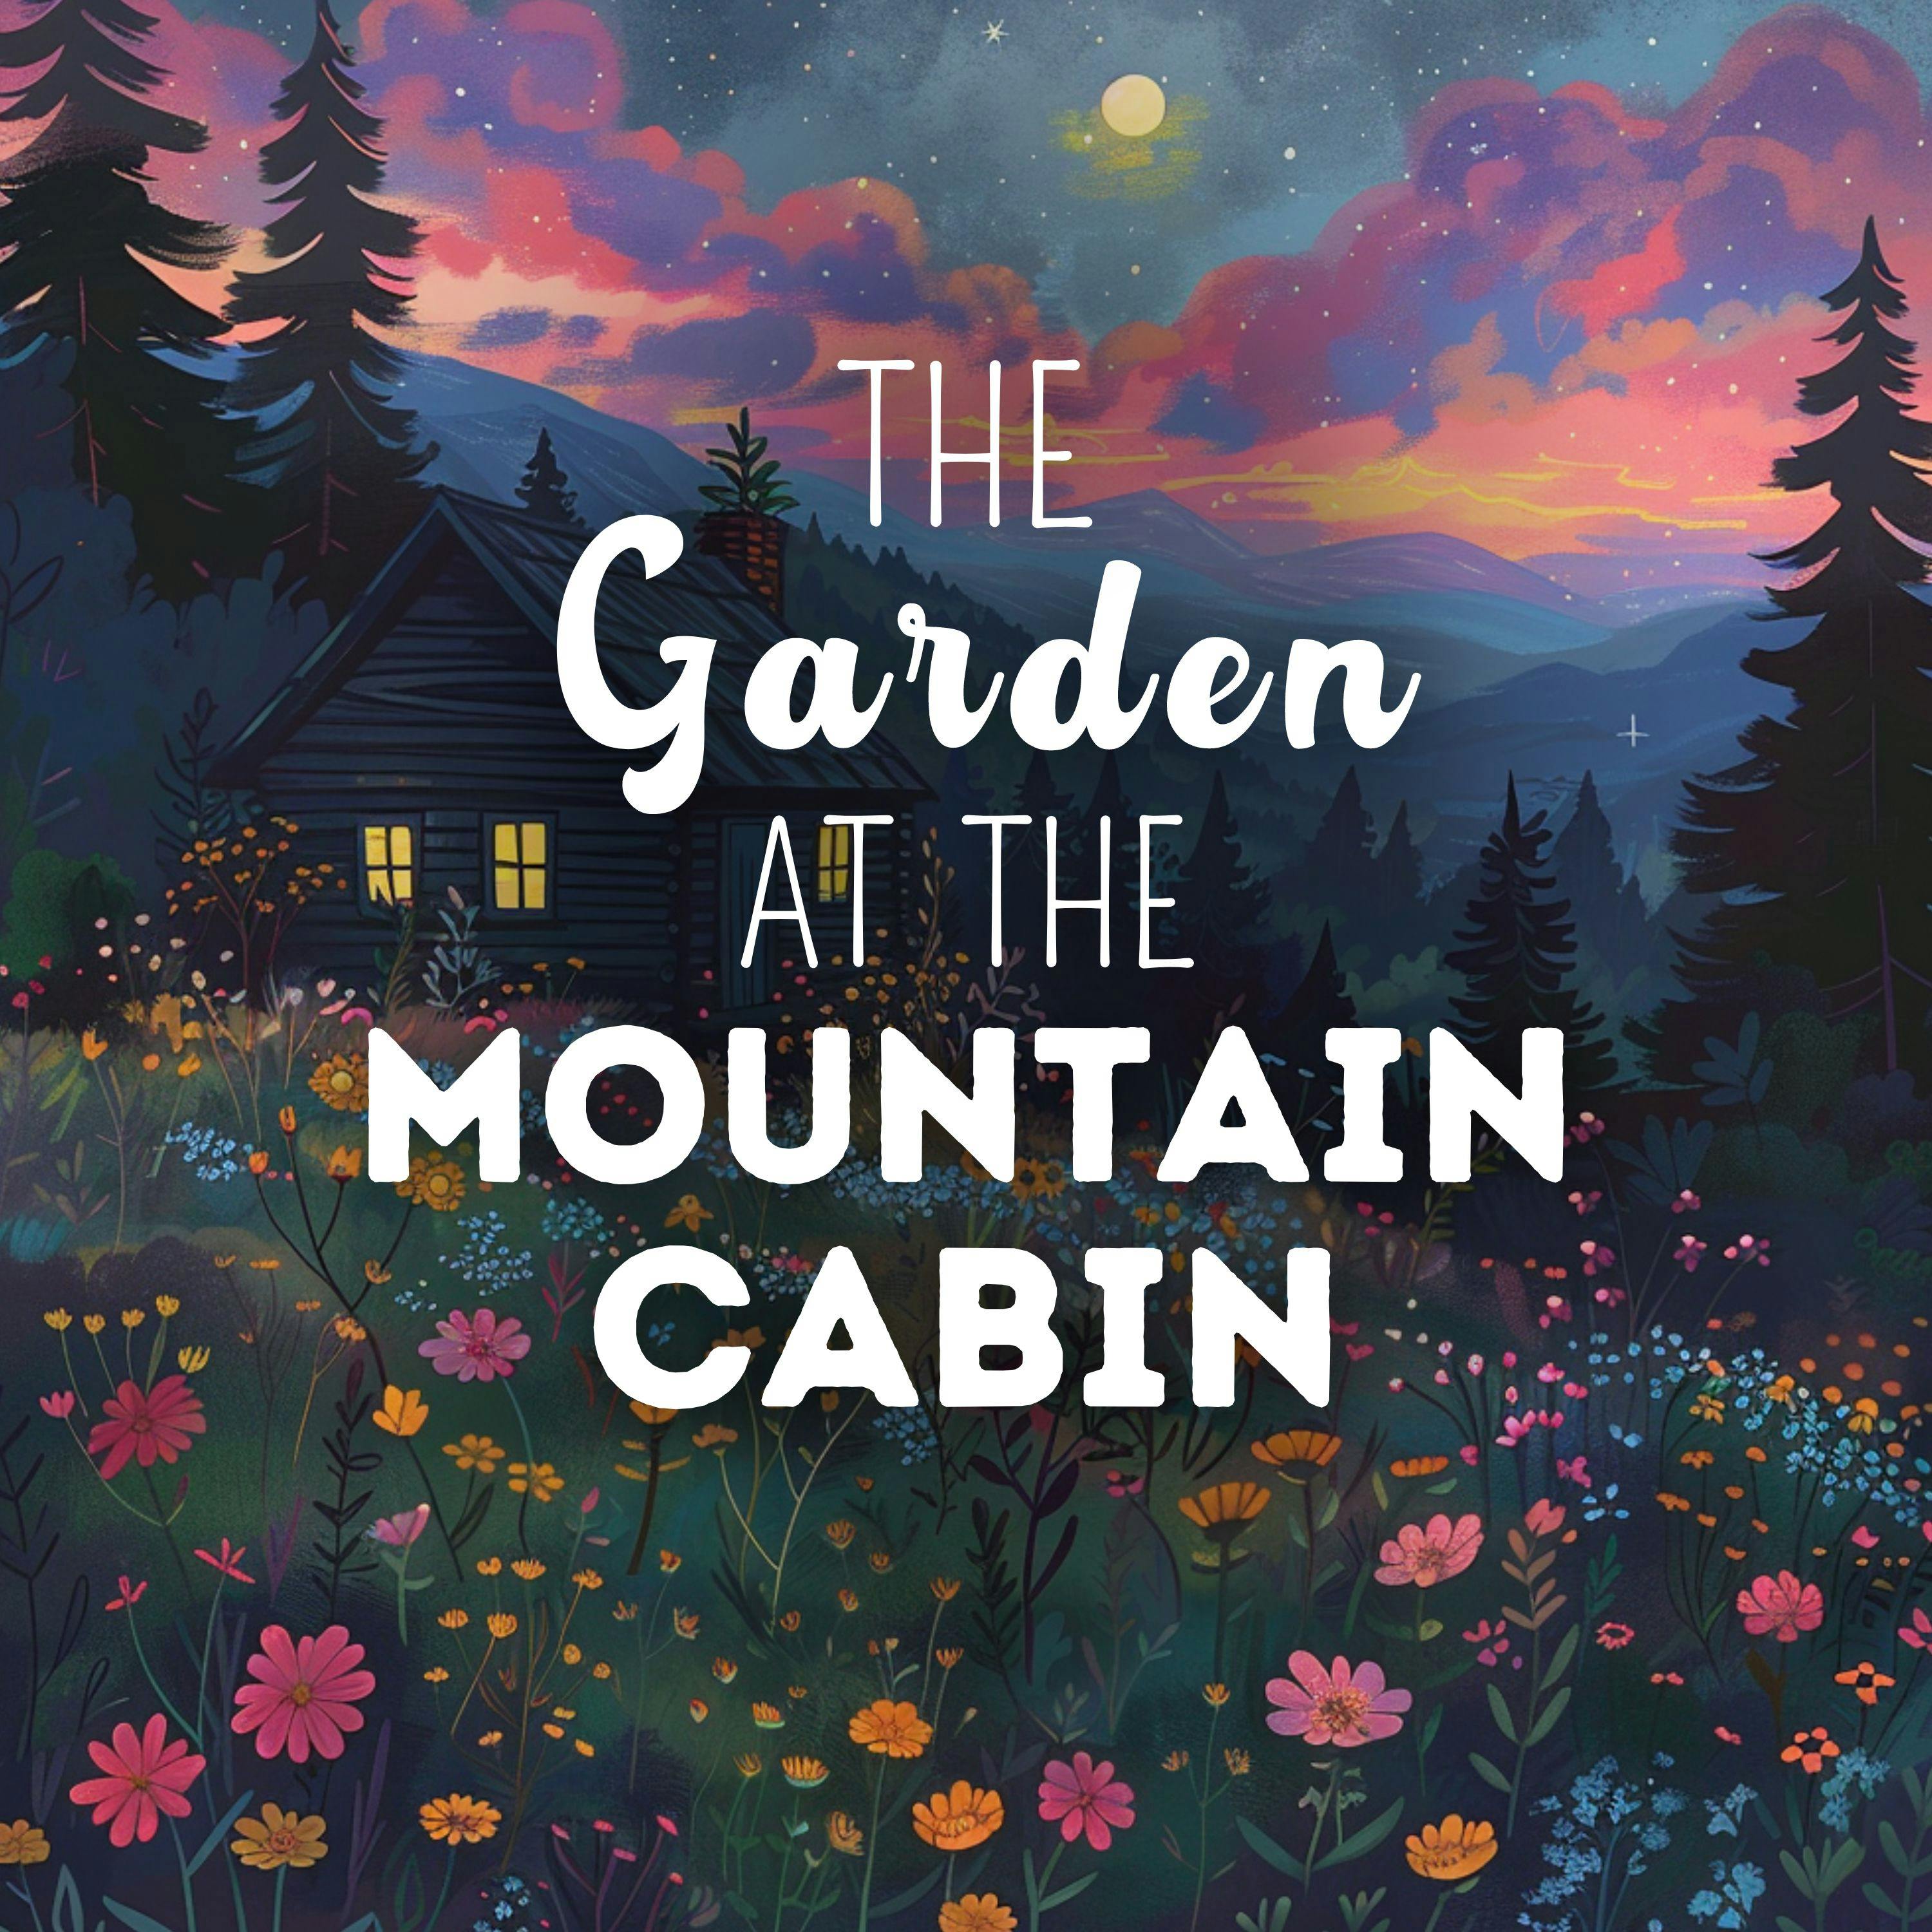 The Garden at the Mountain Cabin